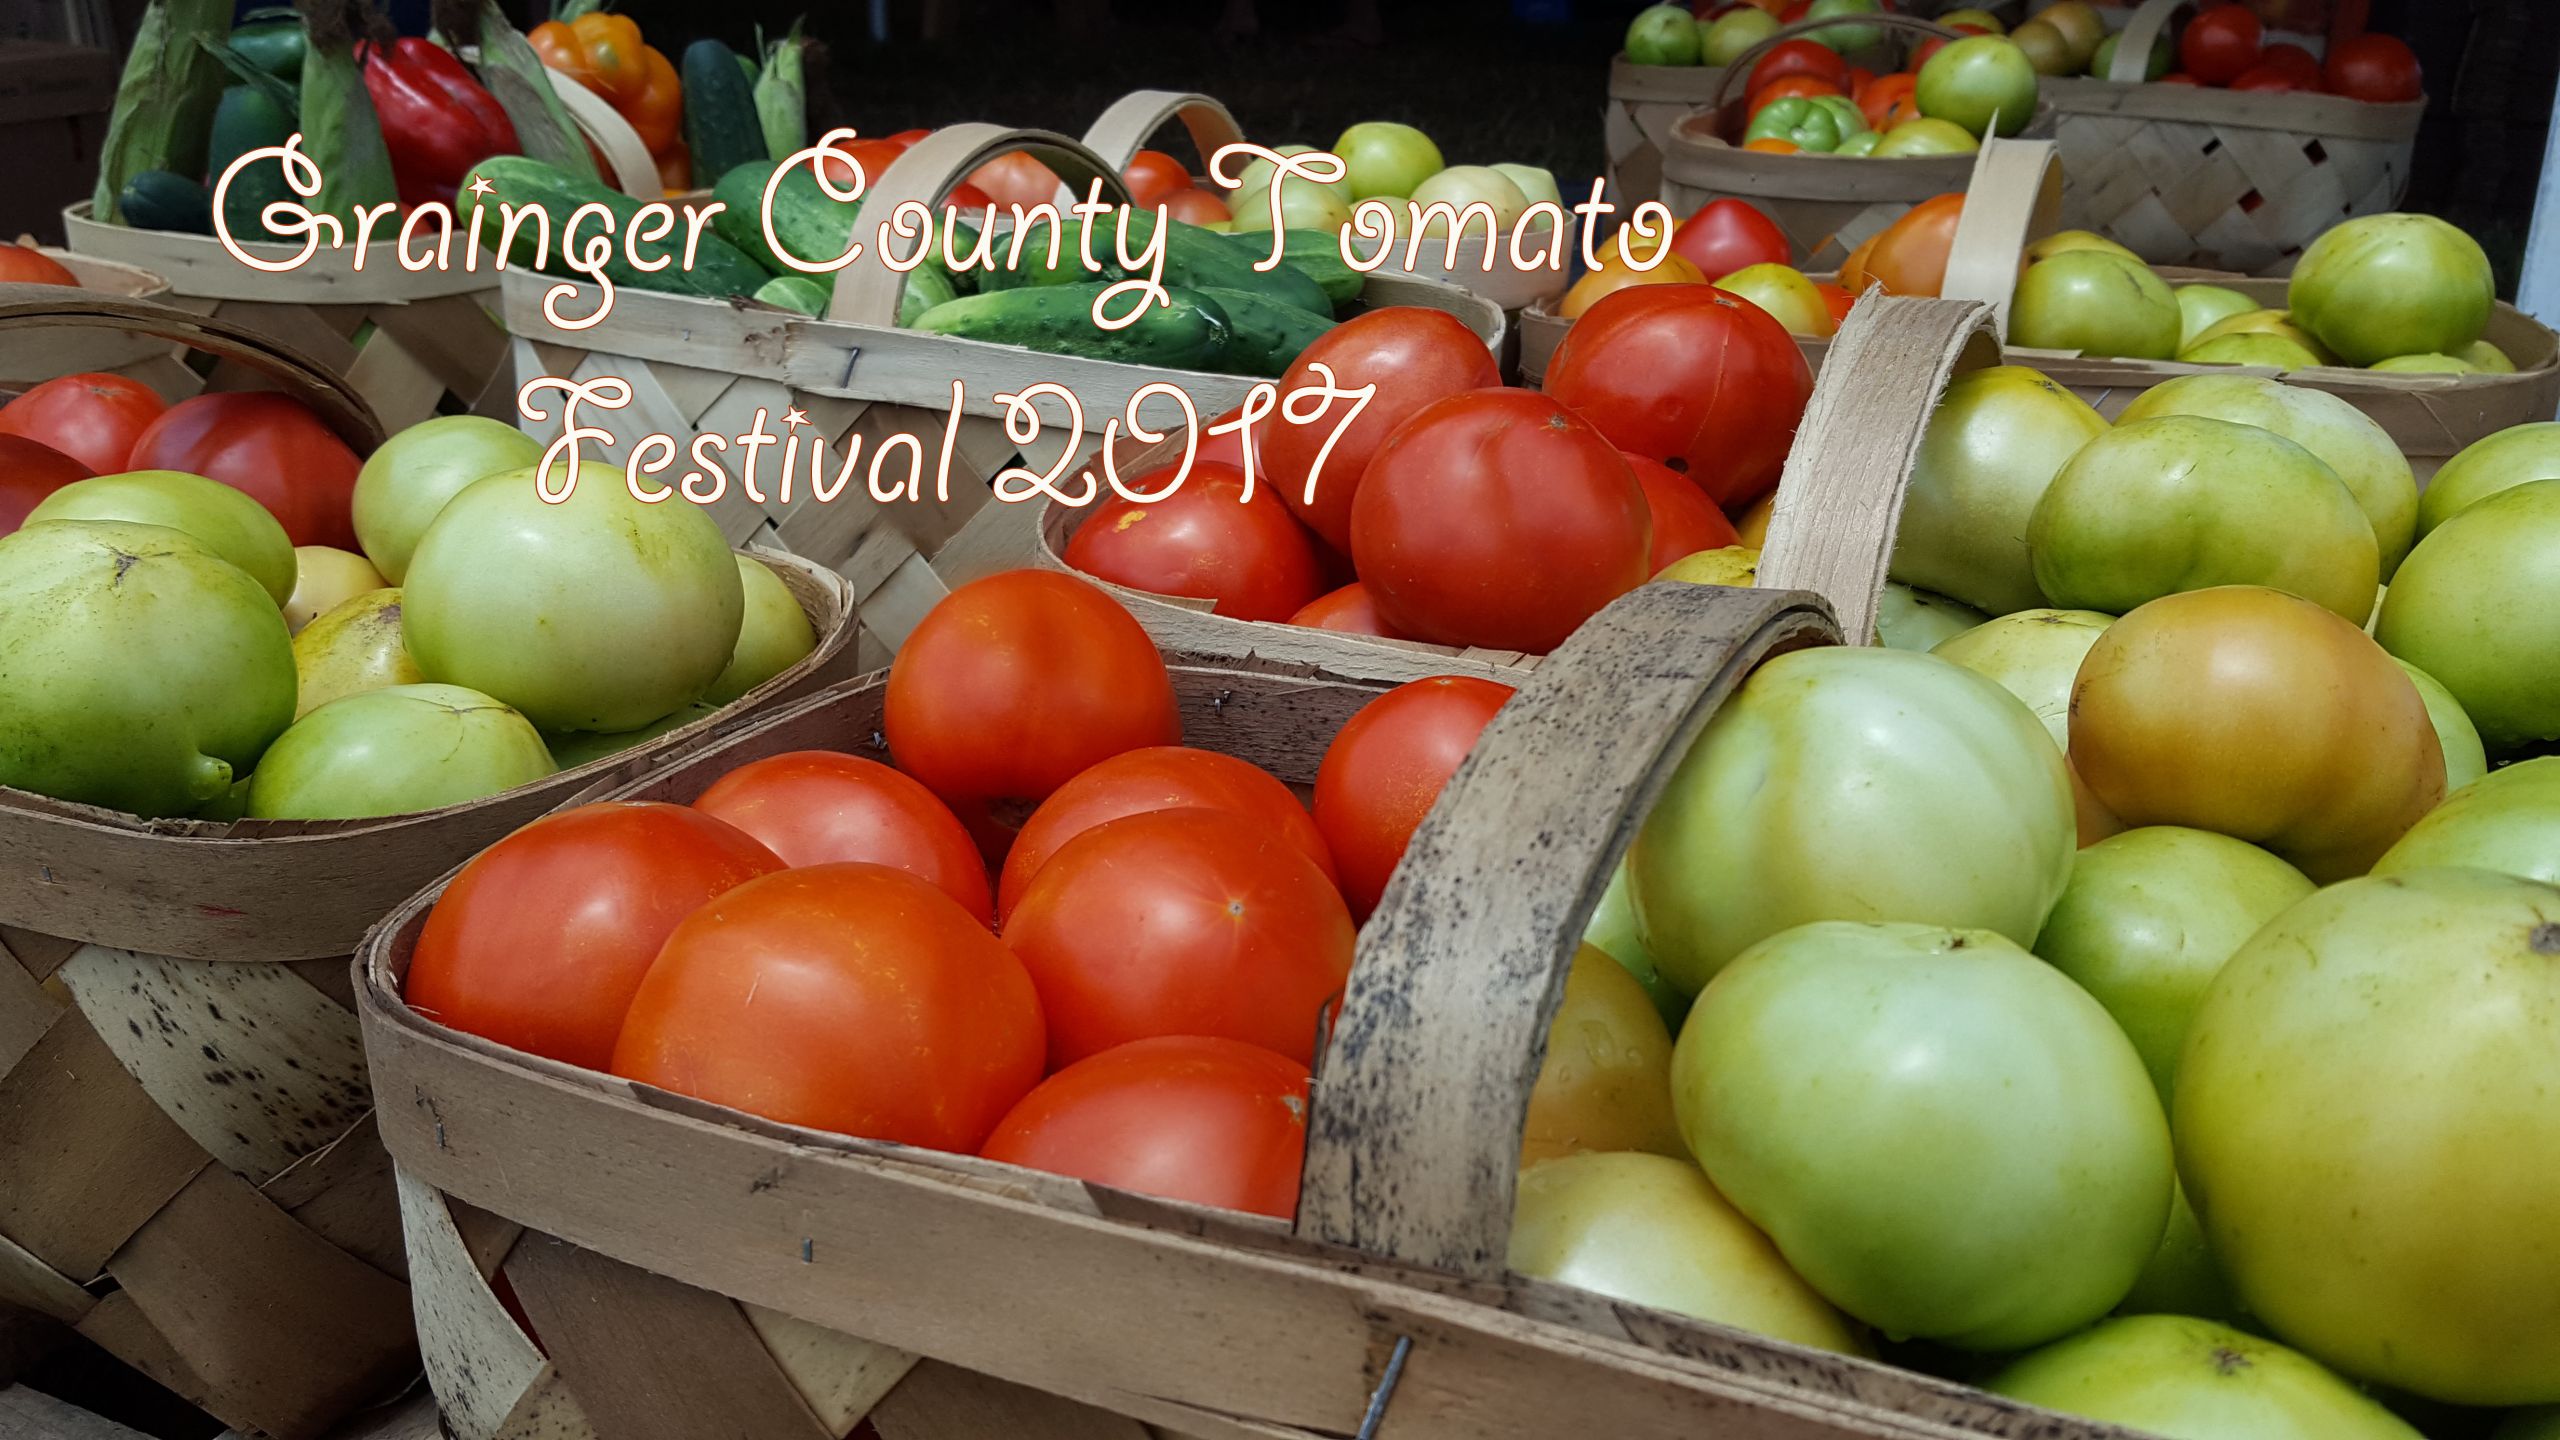 Grainger County Tomato Festival
 Grainger County Tomato Festival 2017